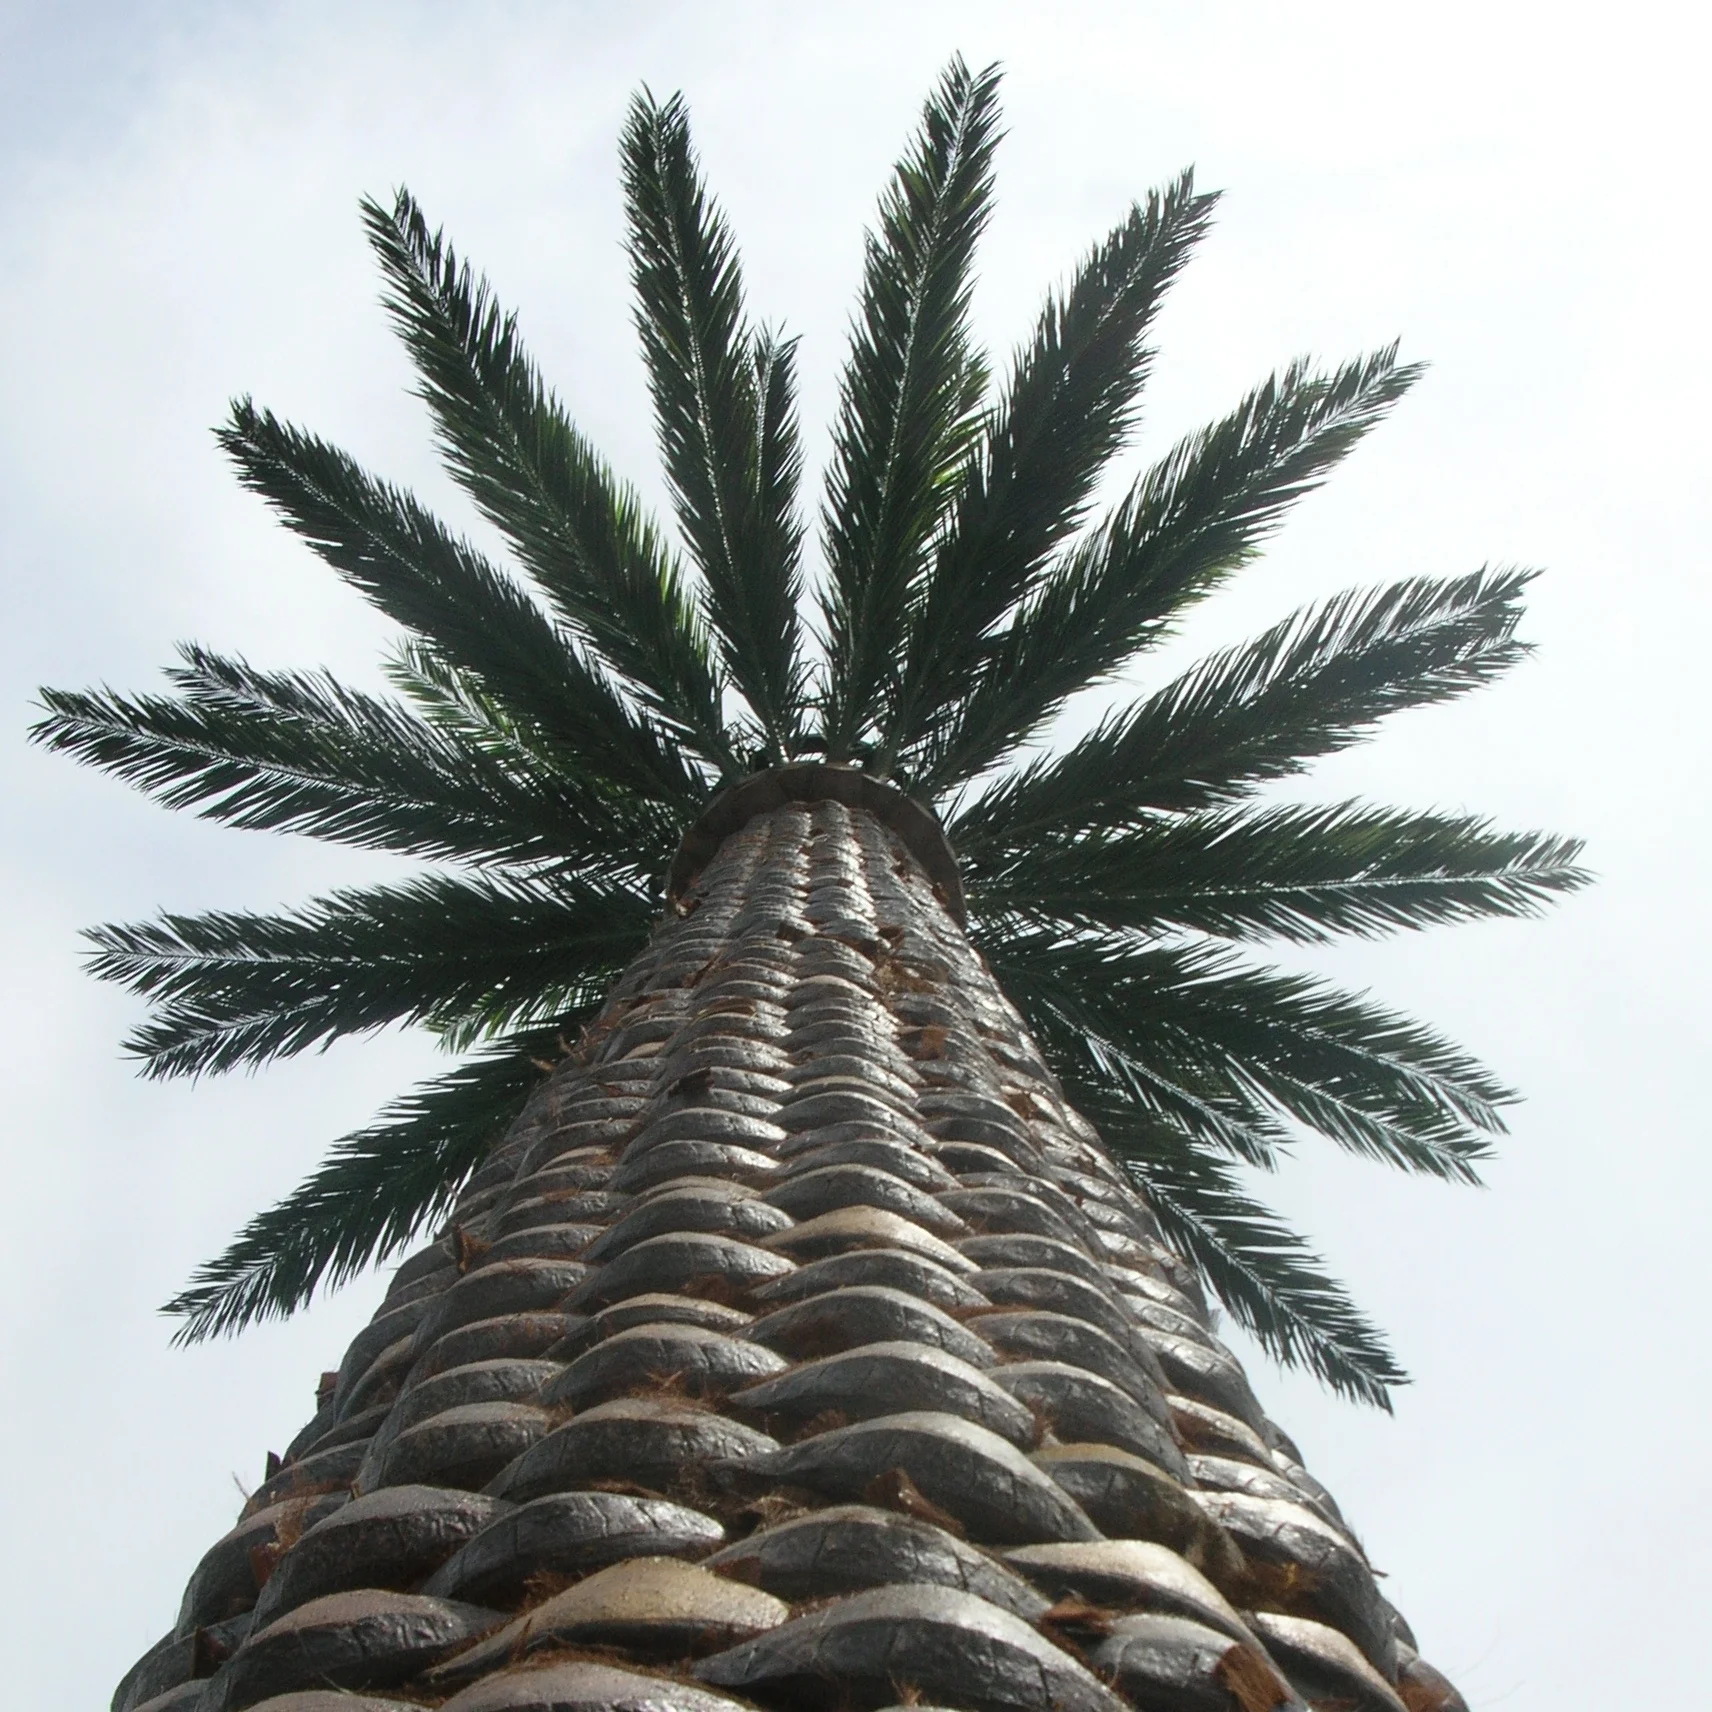 Комунікаційний монополь у вигляді пальмового дерева